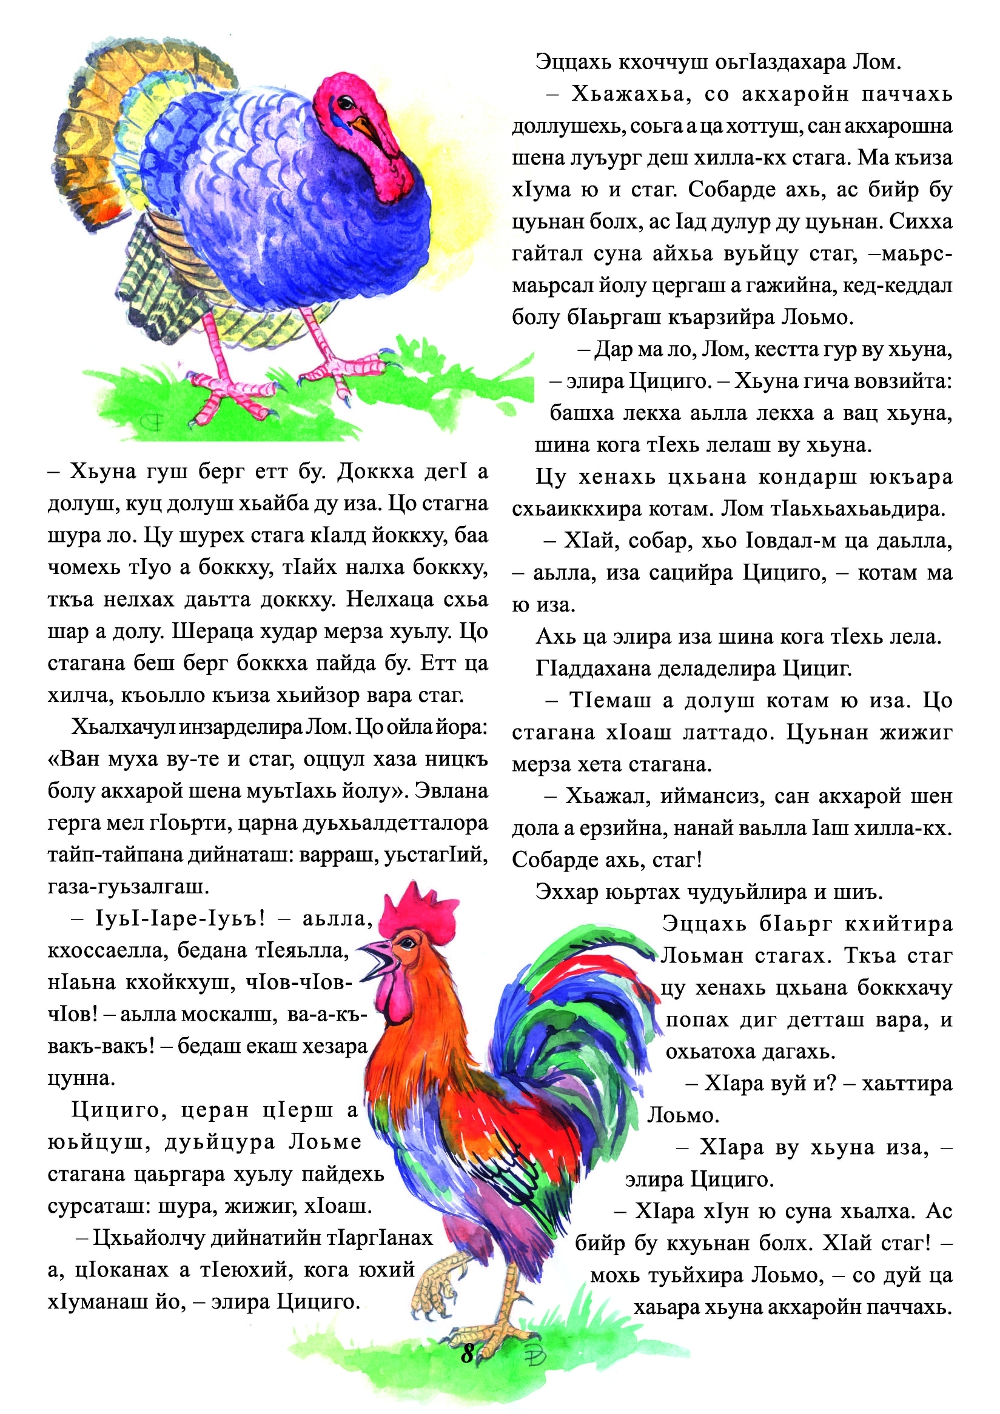 Журнал “Стела1ад”, сказки, сказки на чеченском, Туьйранаш, чеченский язык